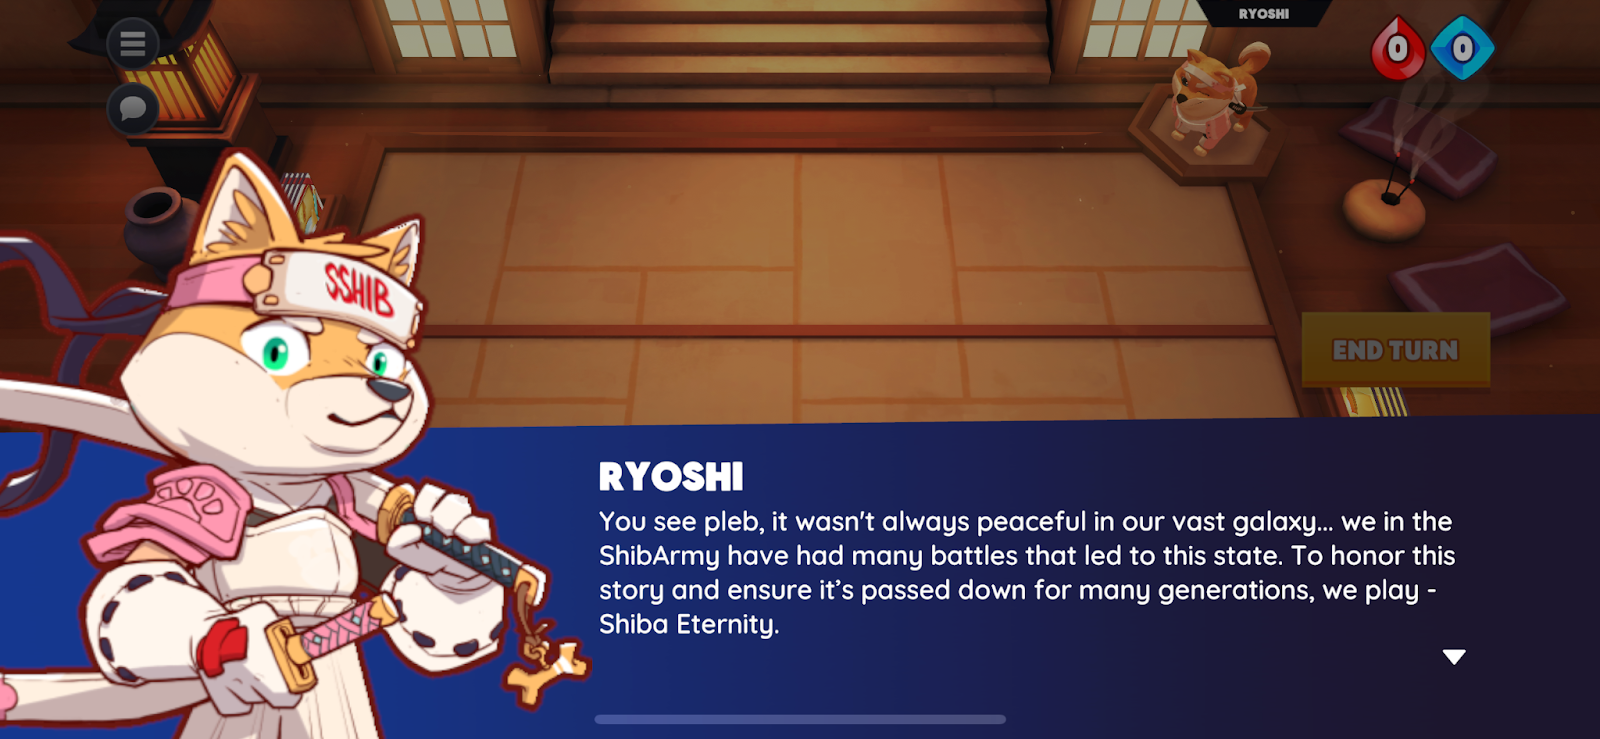 Meet Ryoshi